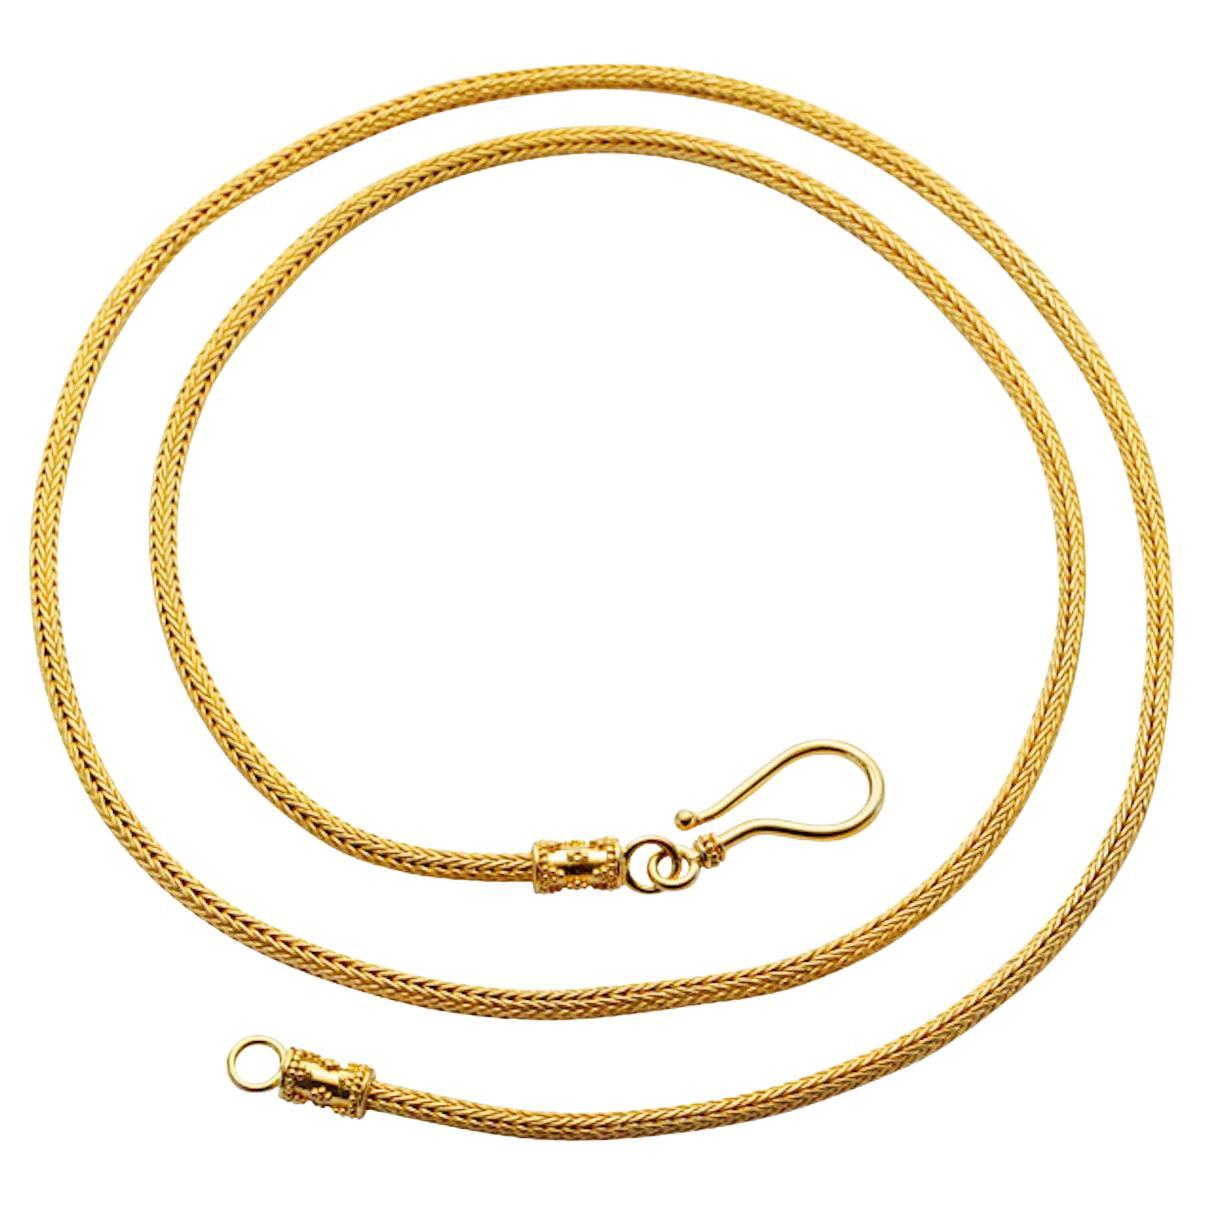 Steven Battelle Handwoven 22K 22 Inch Gold Snake Chain